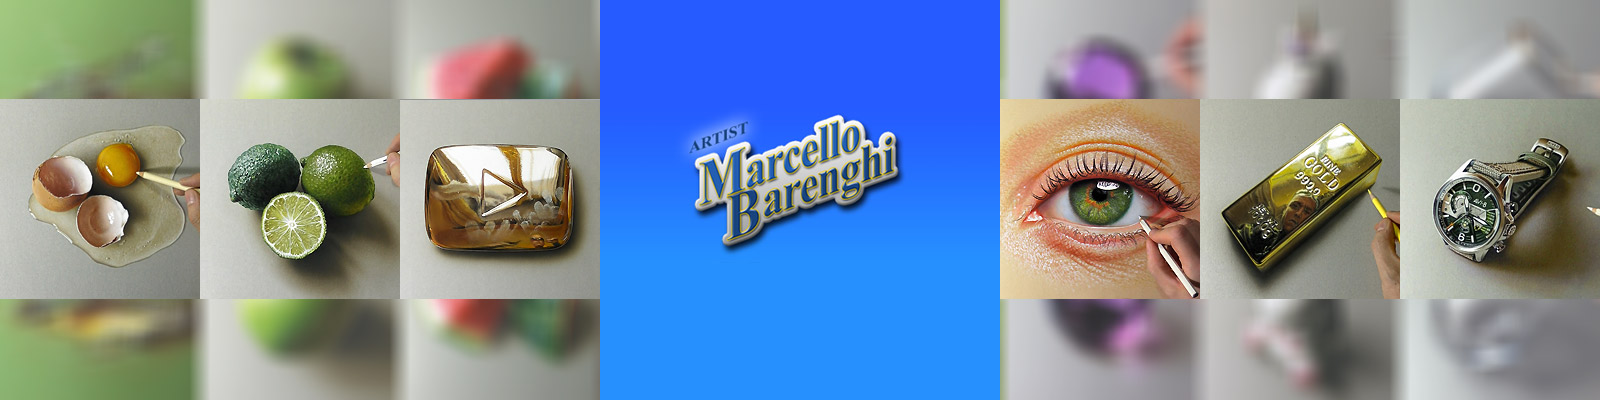 MarcelloBarenghi bannière